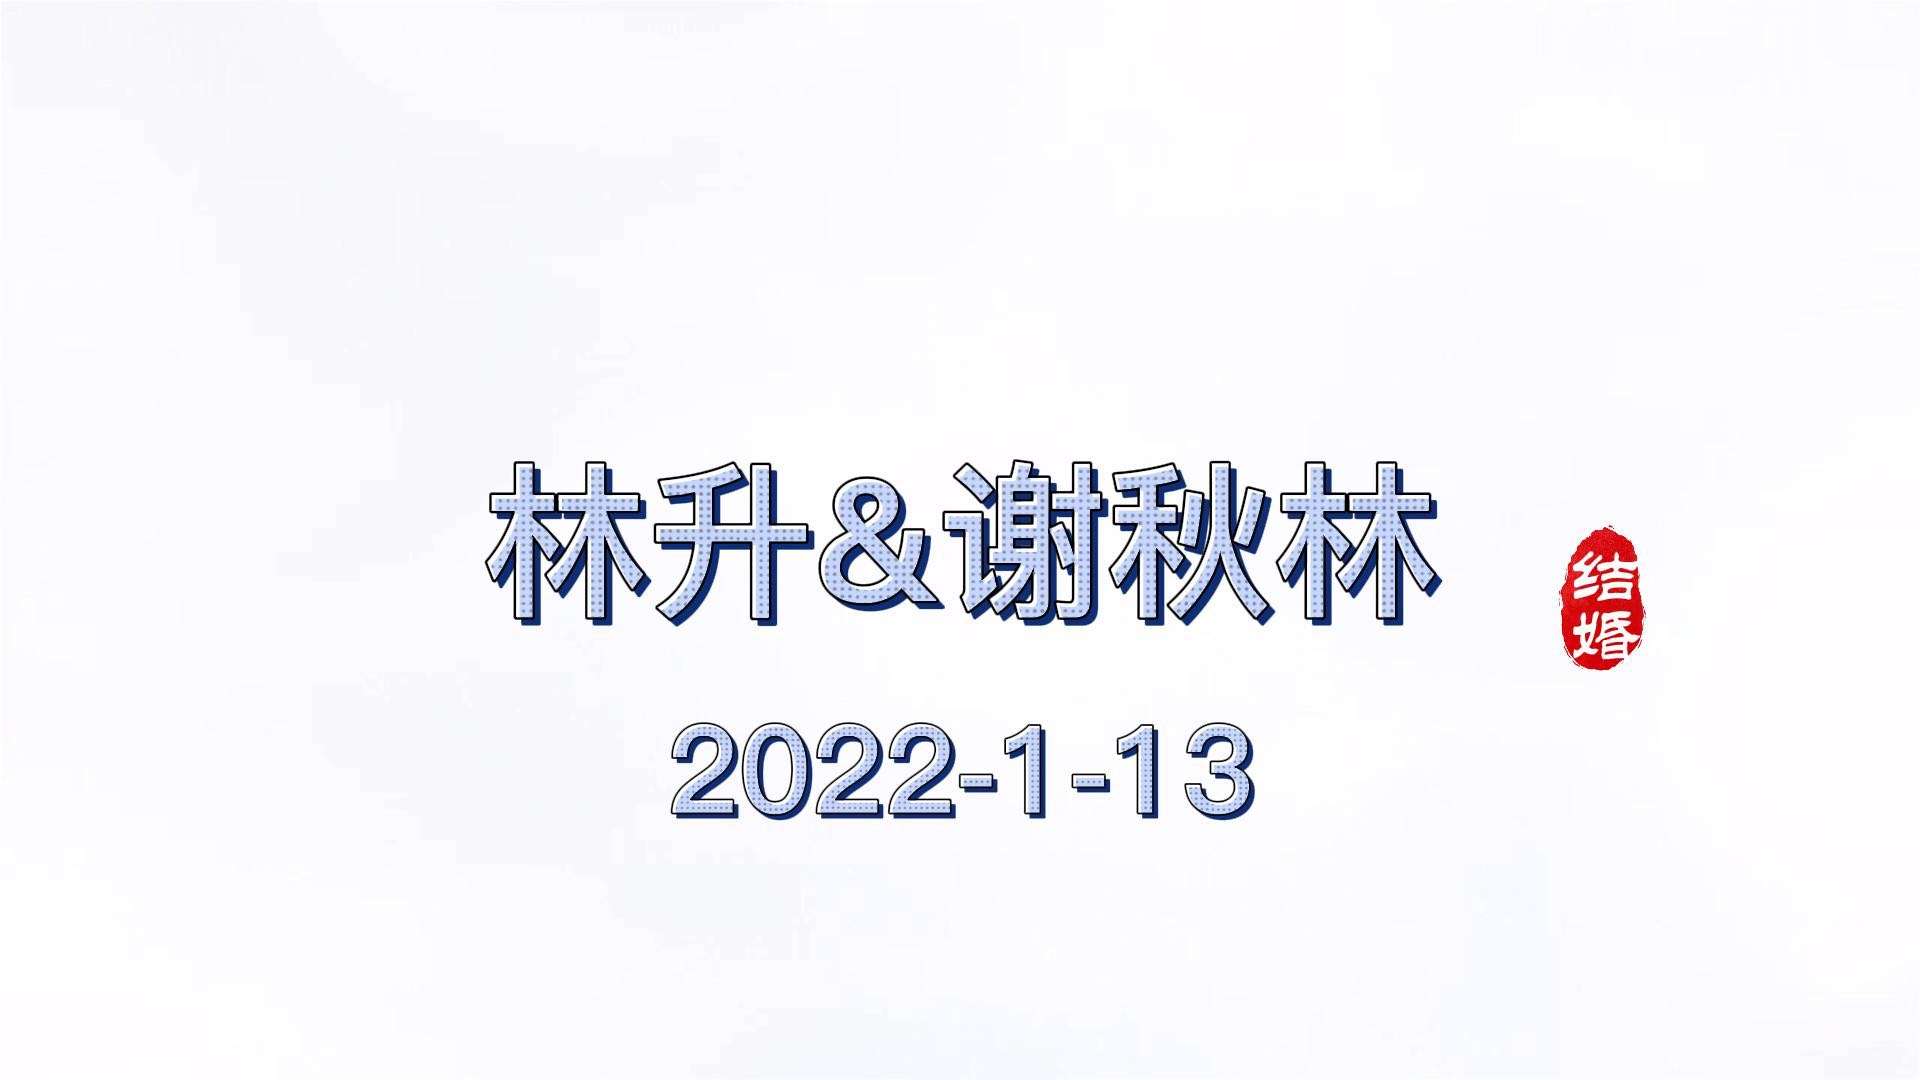 林升&谢秋林2022.1.13婚礼